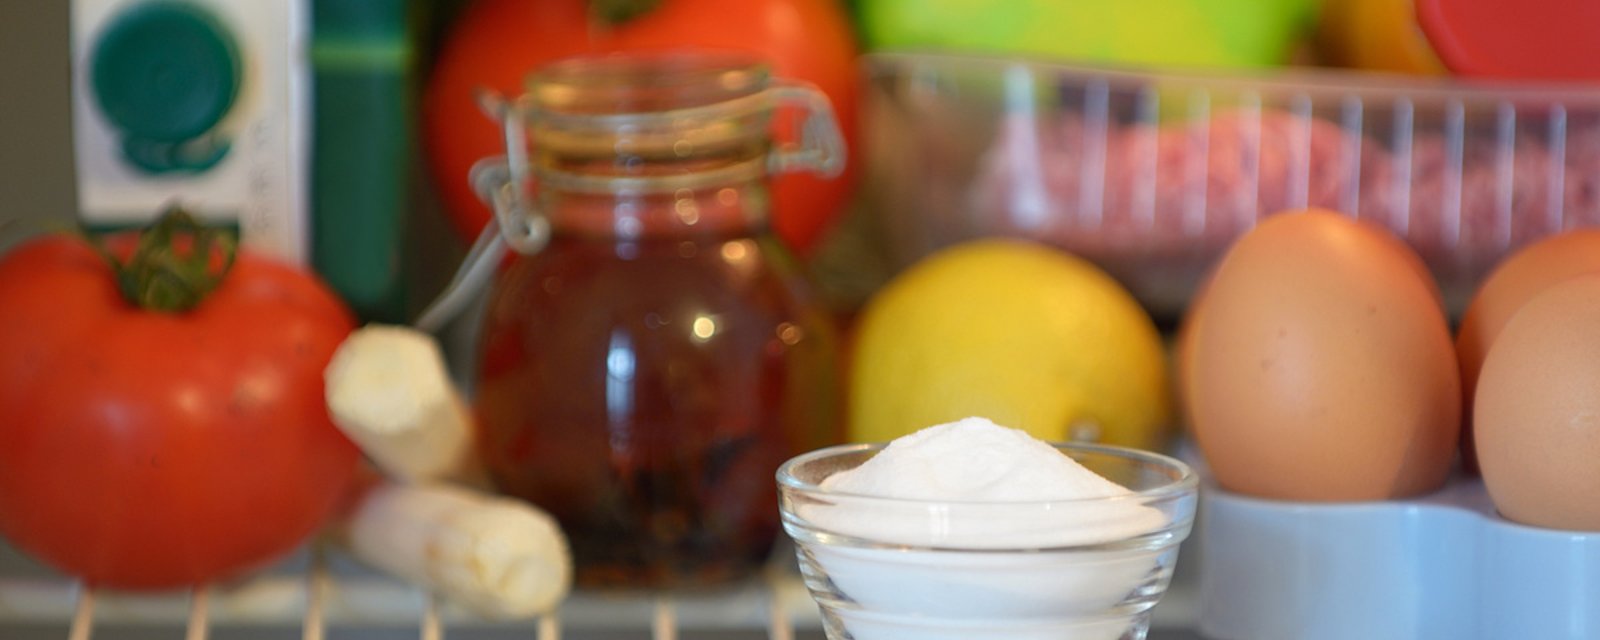 Le bicarbonate de soude est-il réellement efficace dans le frigo?